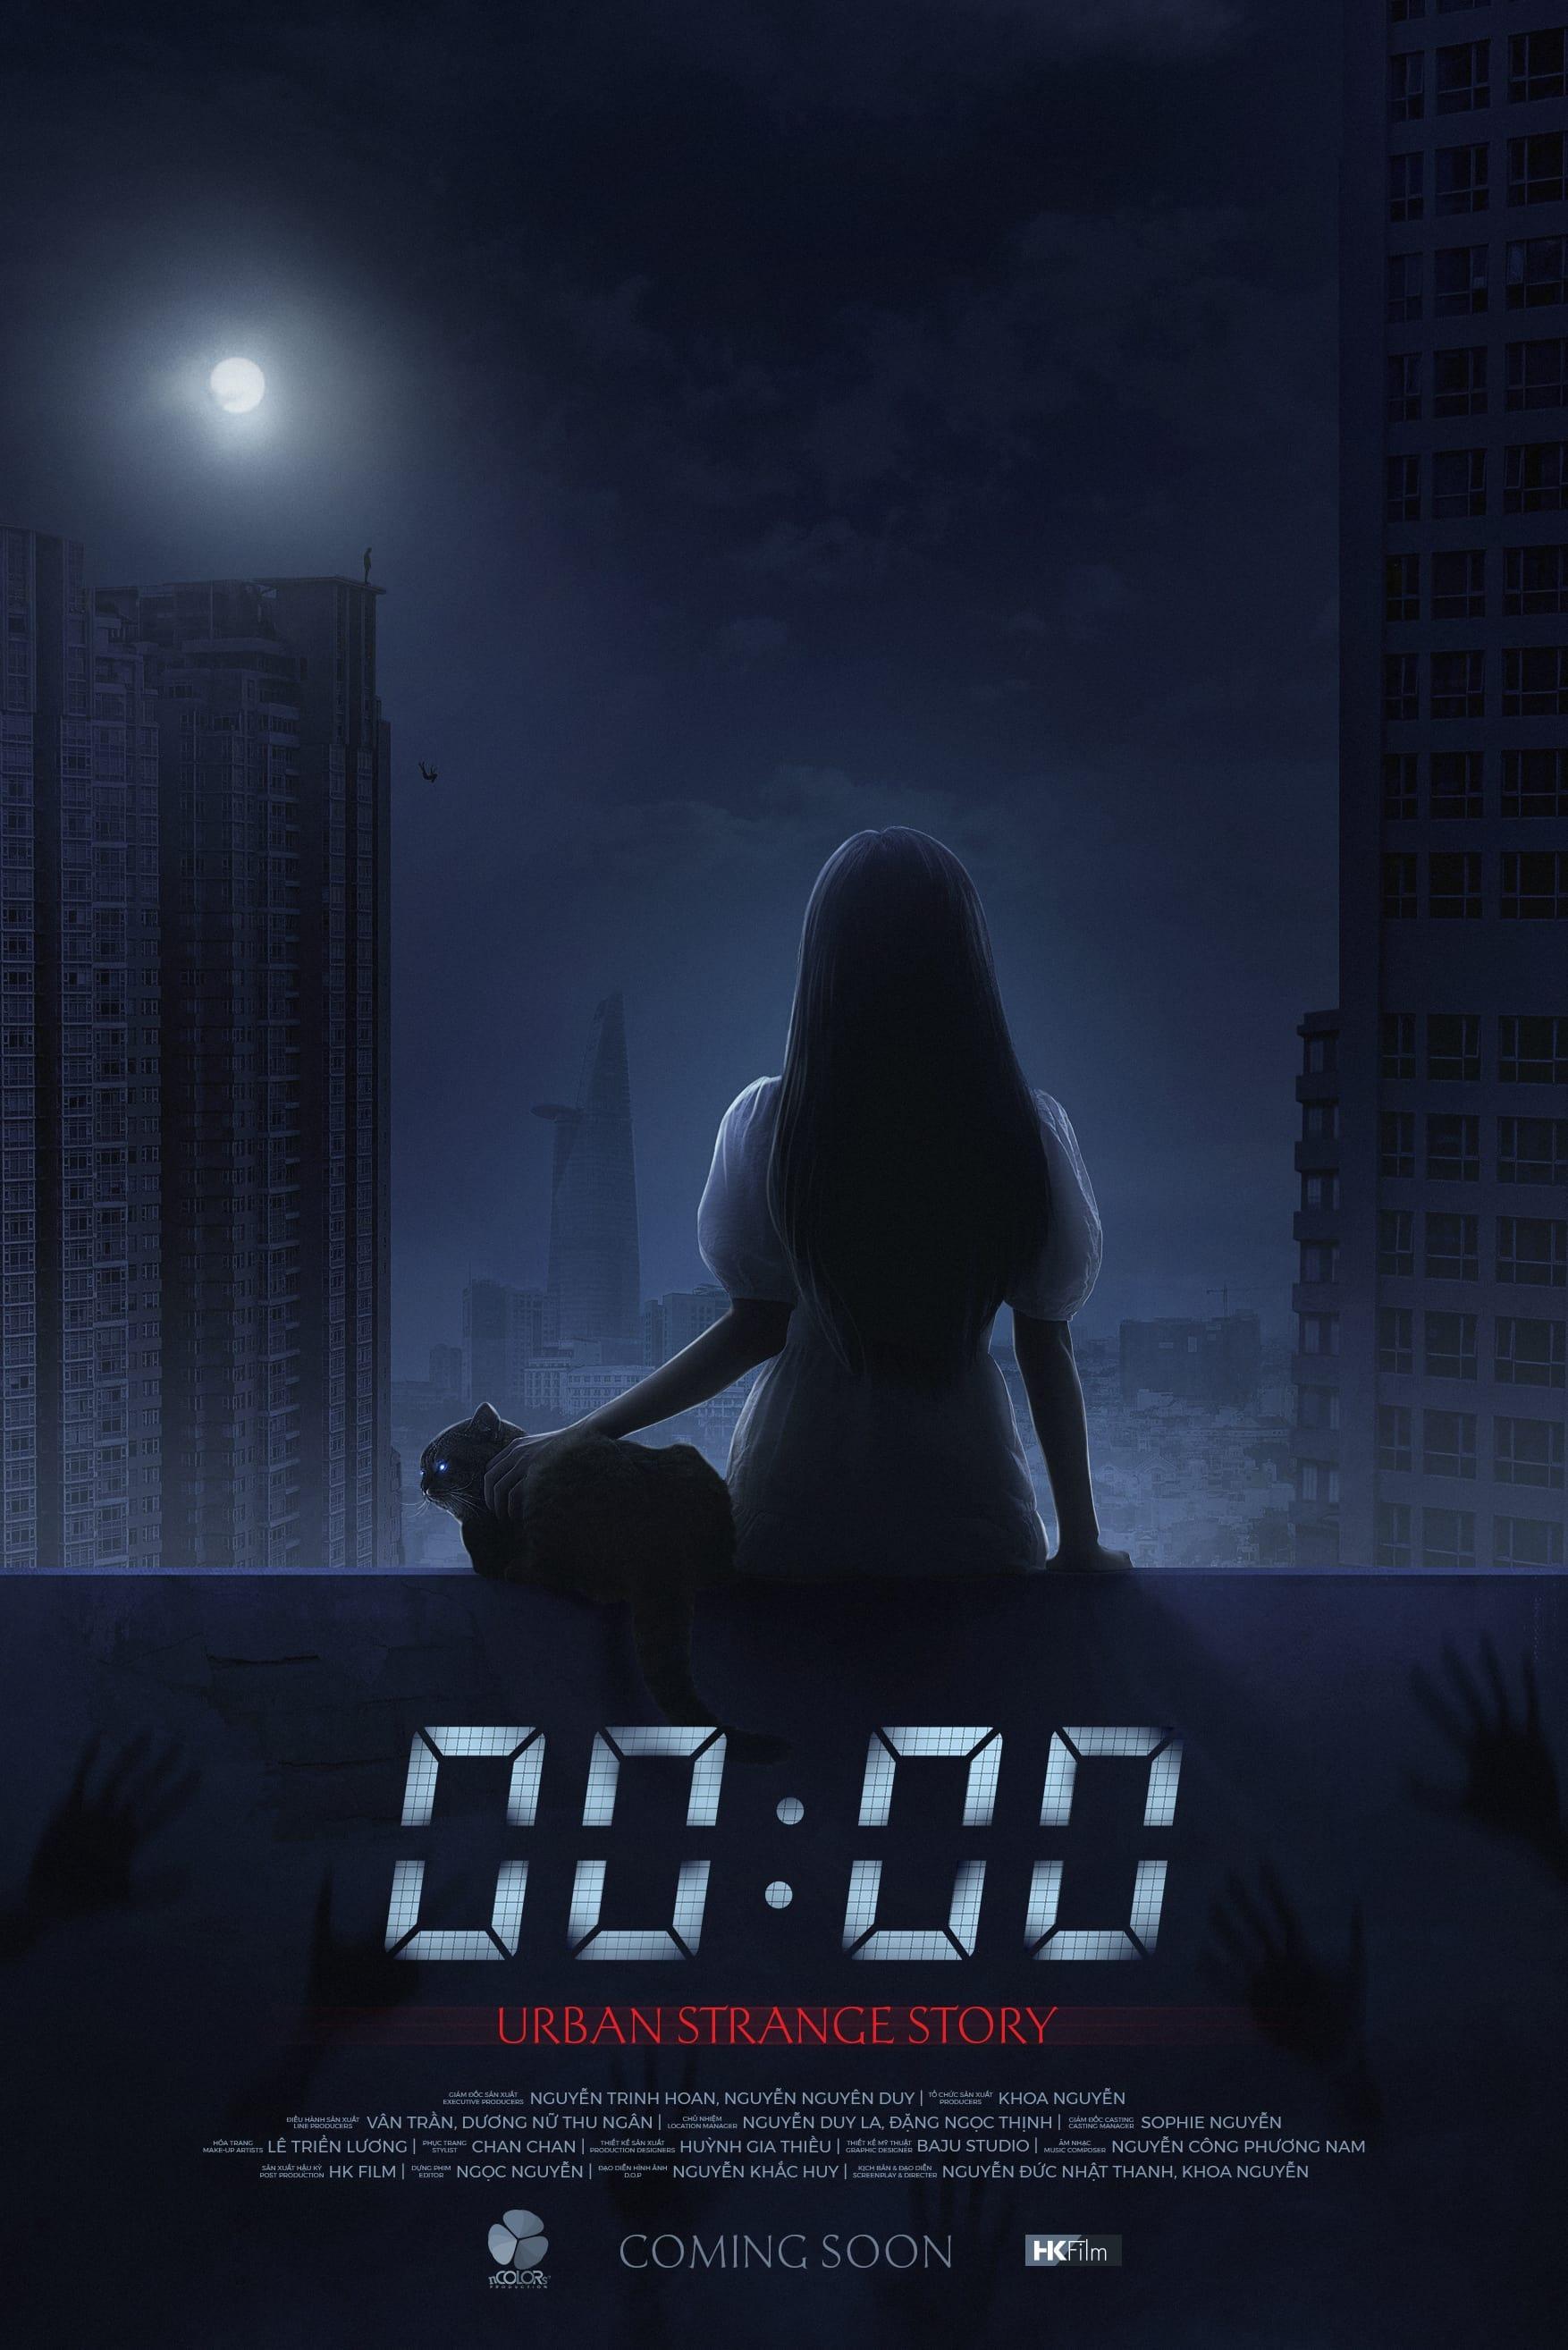 00:00: Chuyện Kỳ Dị đô Thị poster